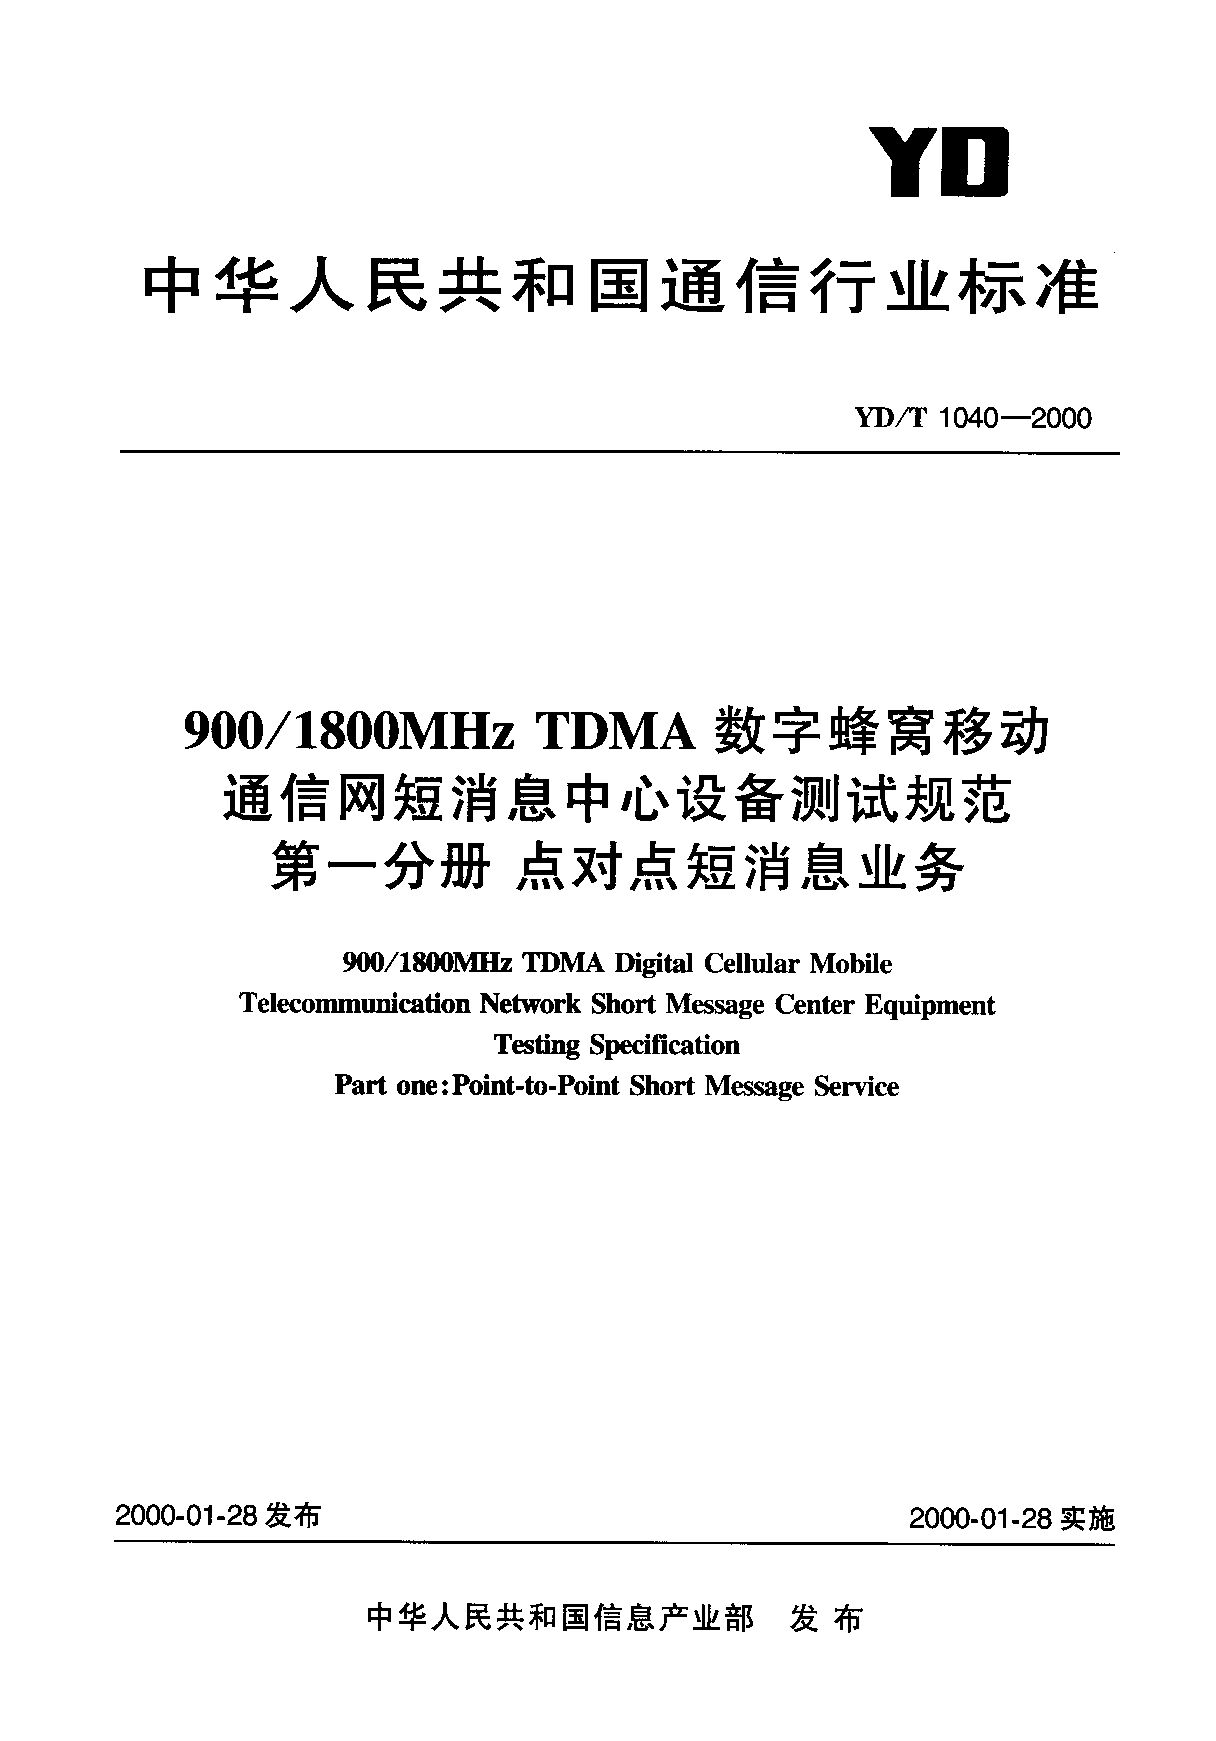 YD/T 1040-2000